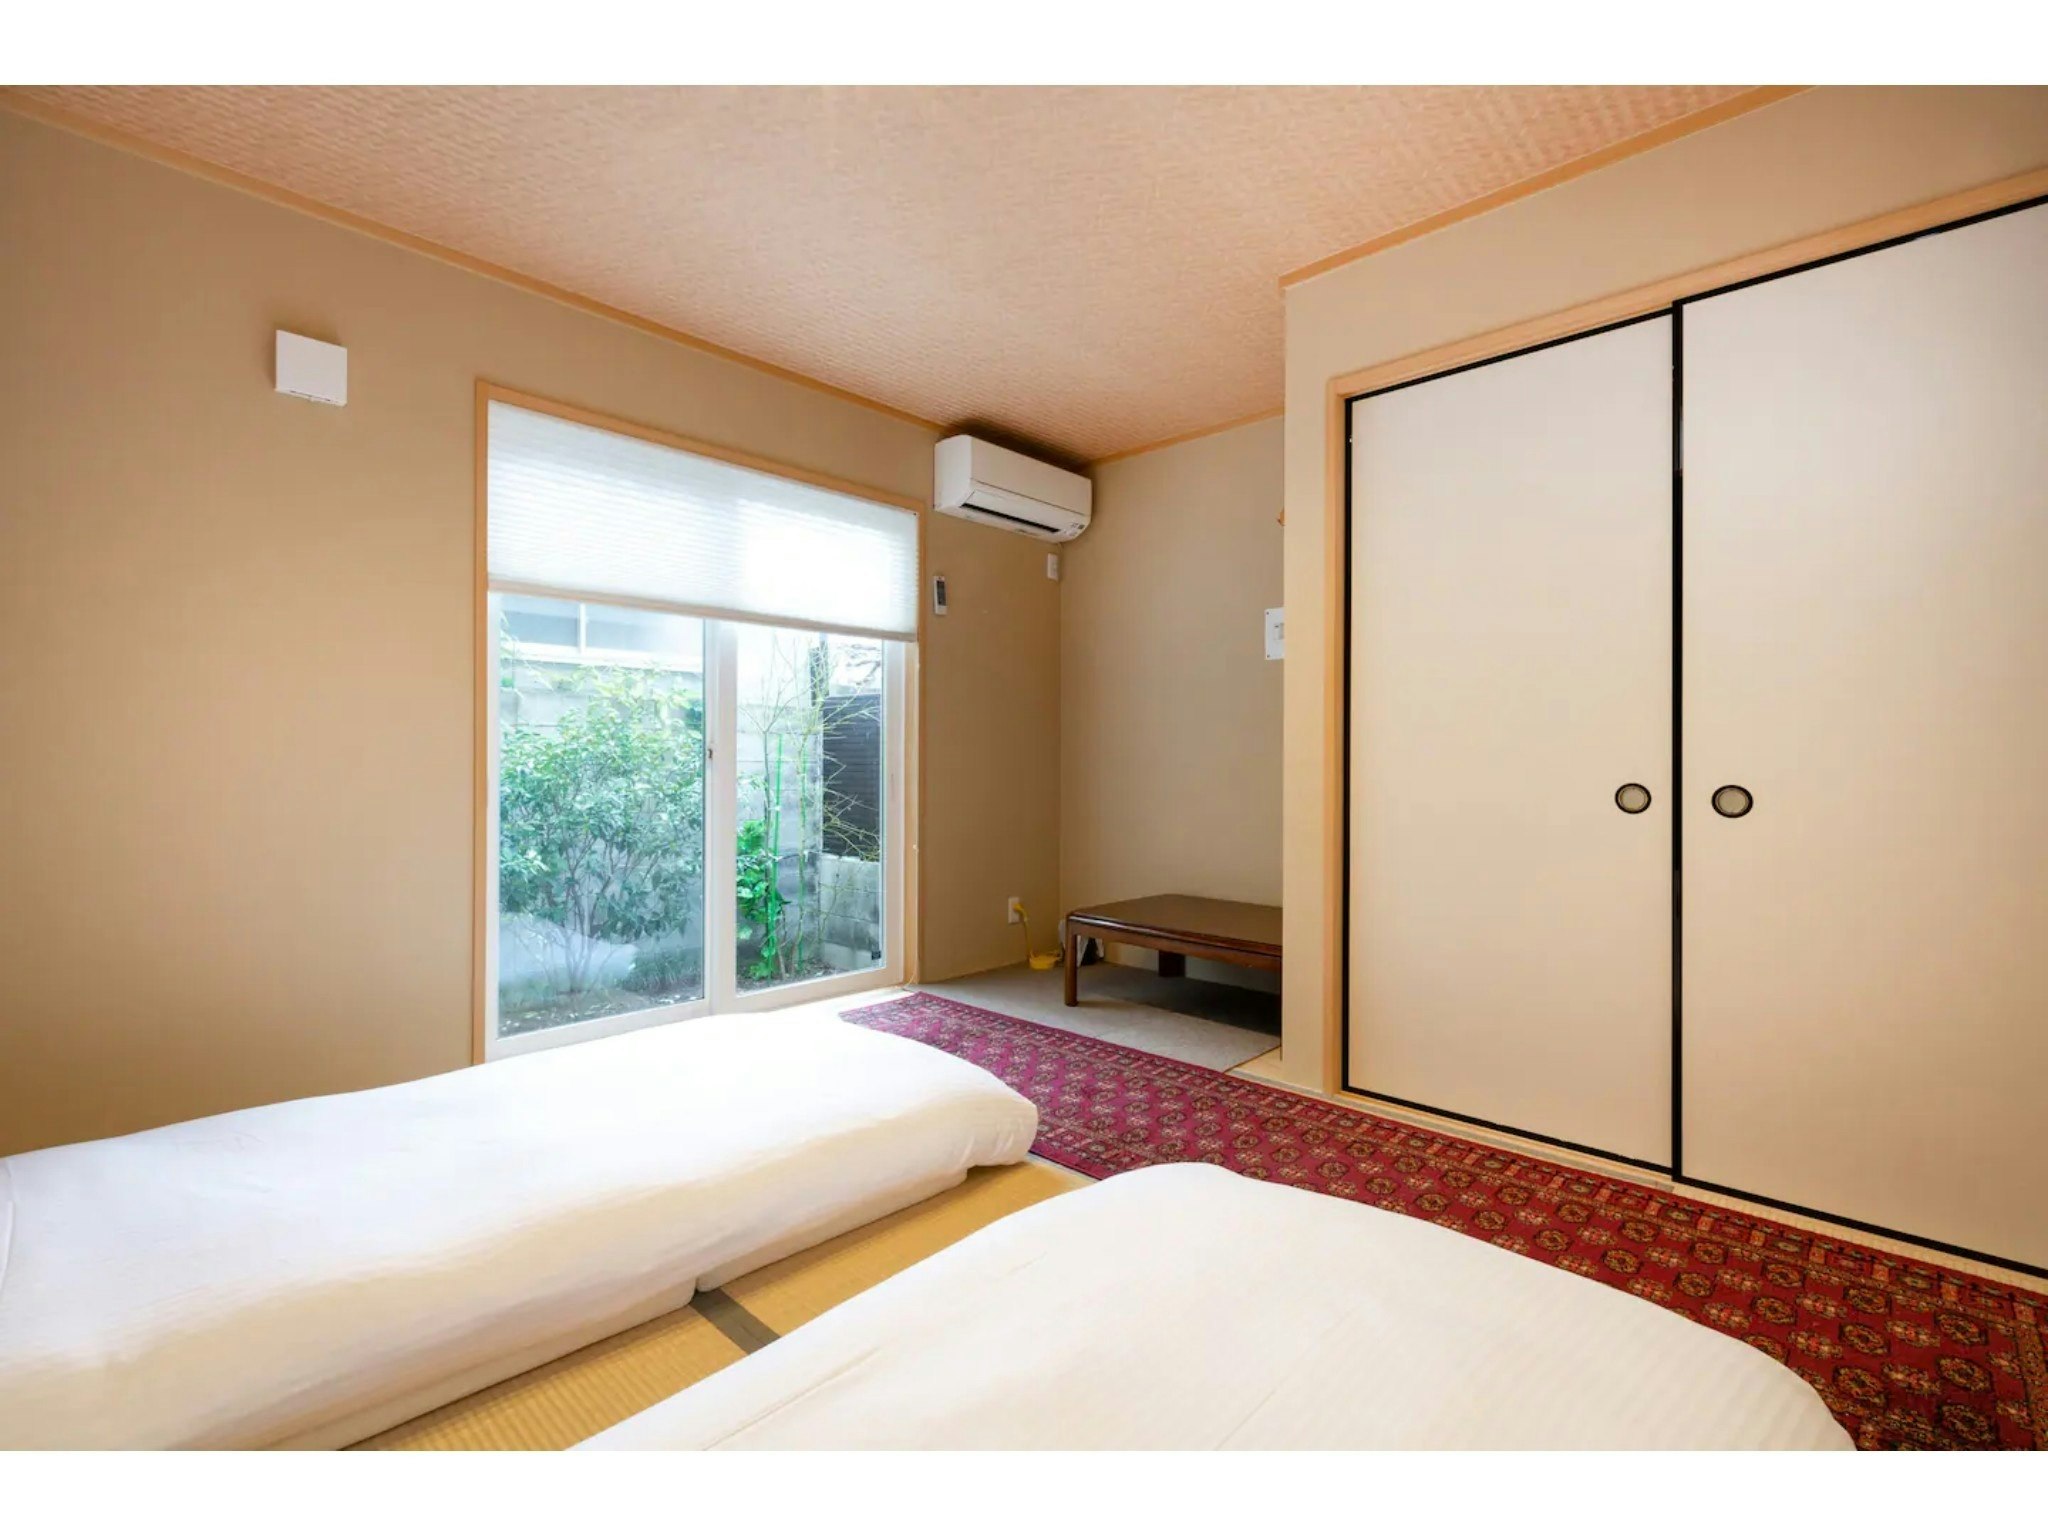 京都駅徒歩6分、新築2階建て一軒家、82m2、4部屋、2浴室、2トイレ、イオンモール2分徒歩バルコニ